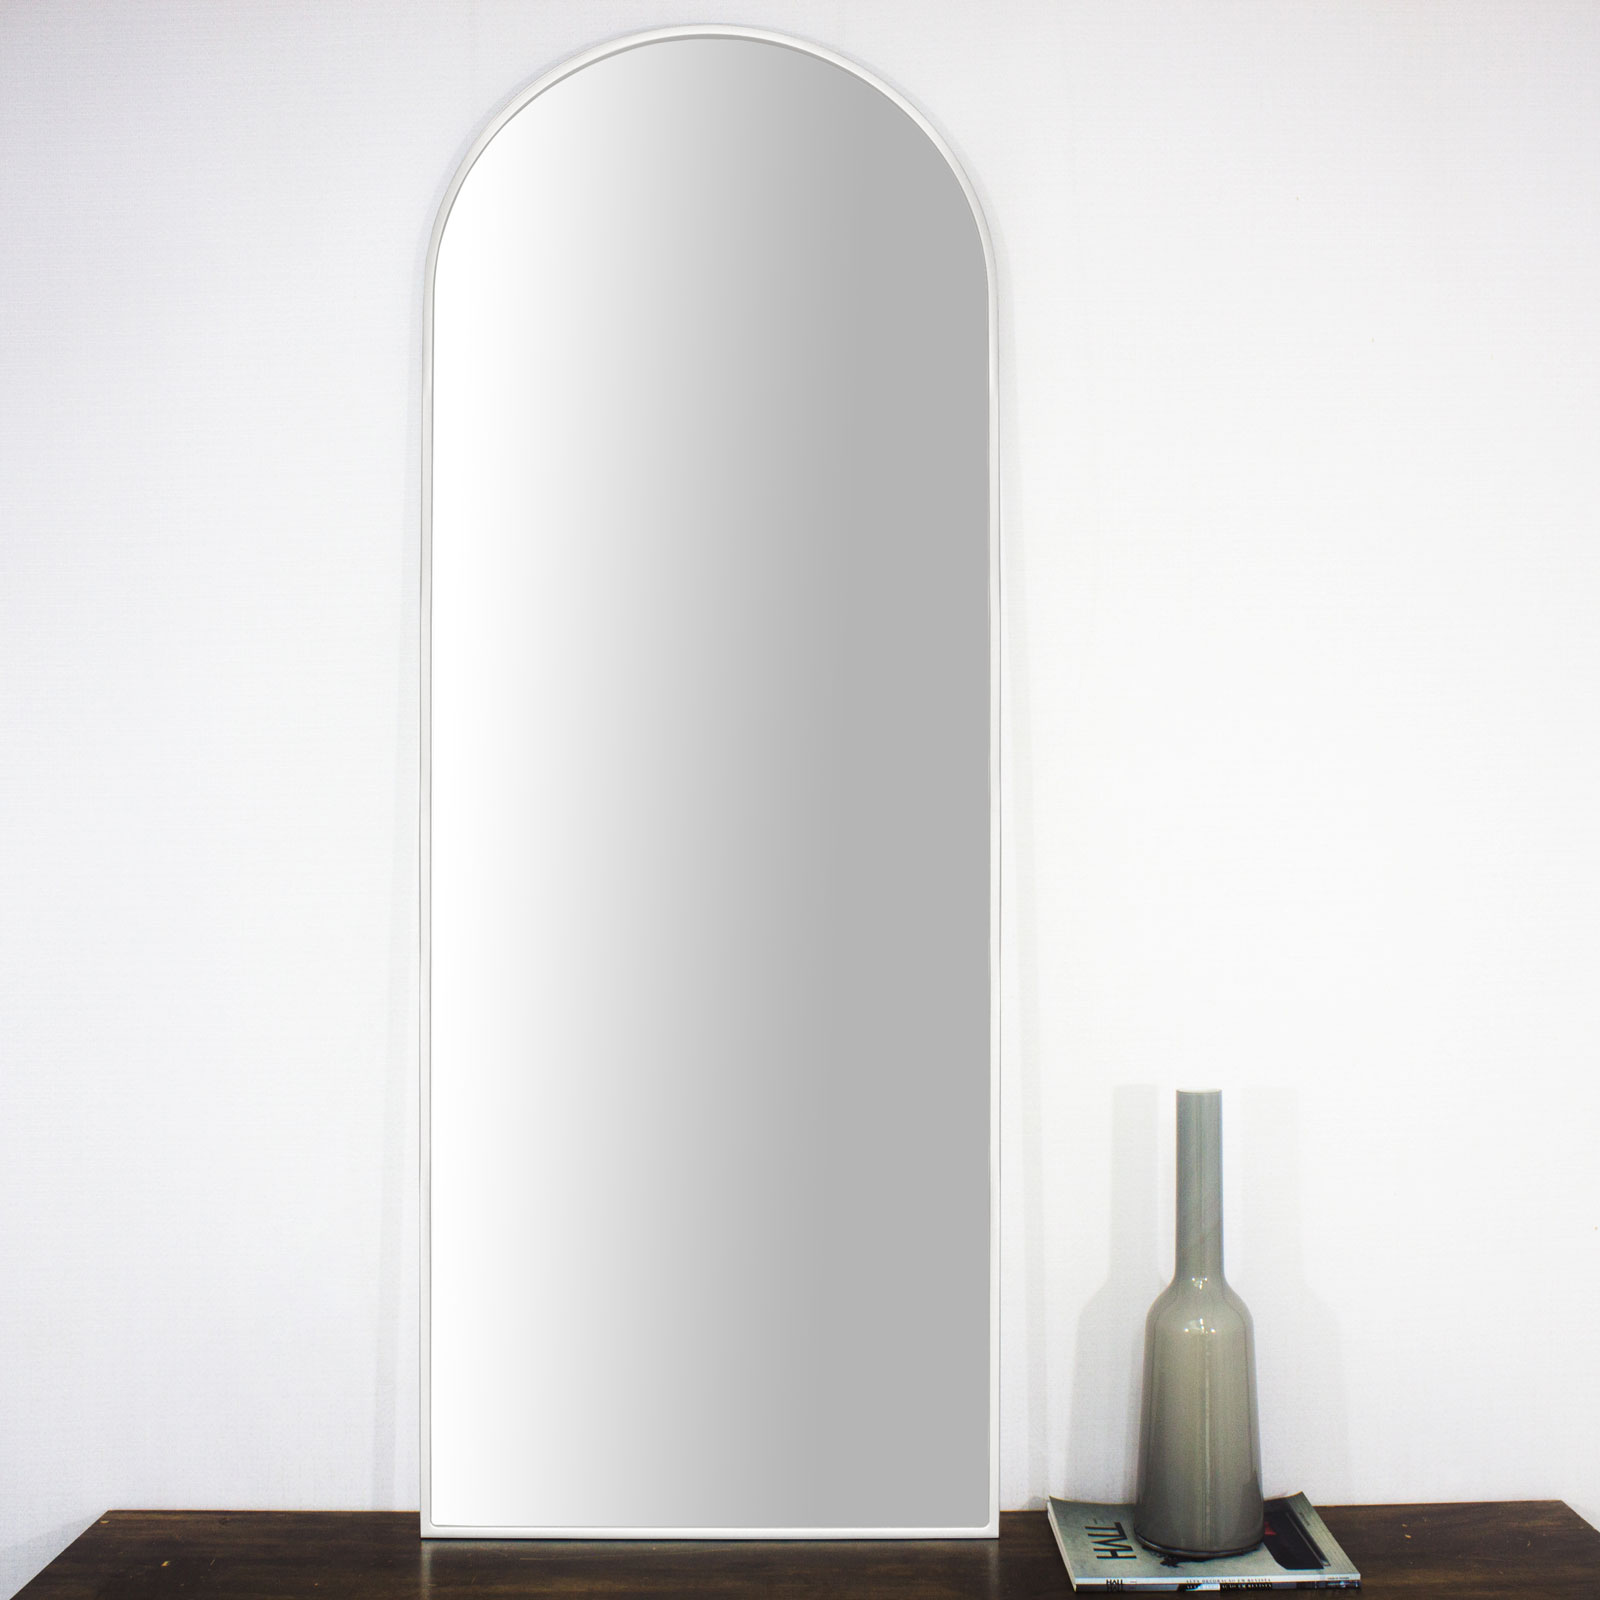 Moldura Semi Oval Janela Mdf Laqueada Branco Brilho para Espelhos V�rias Medidas